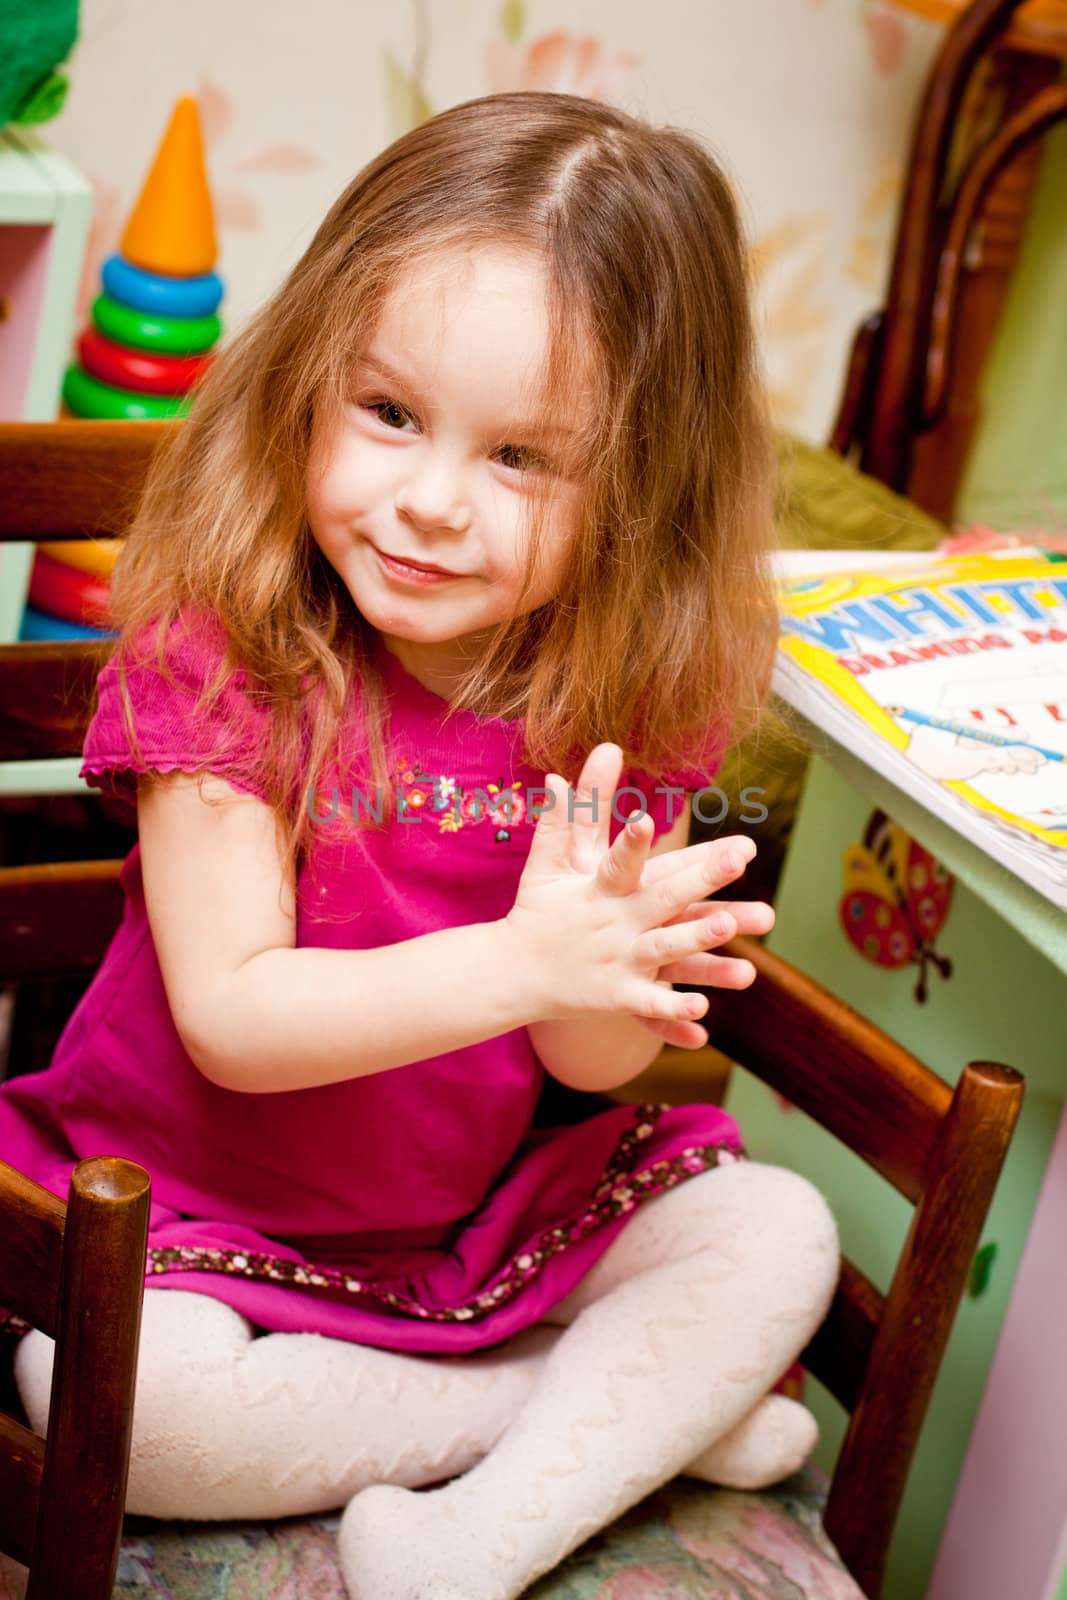 portrait of a happy little girl  indoor